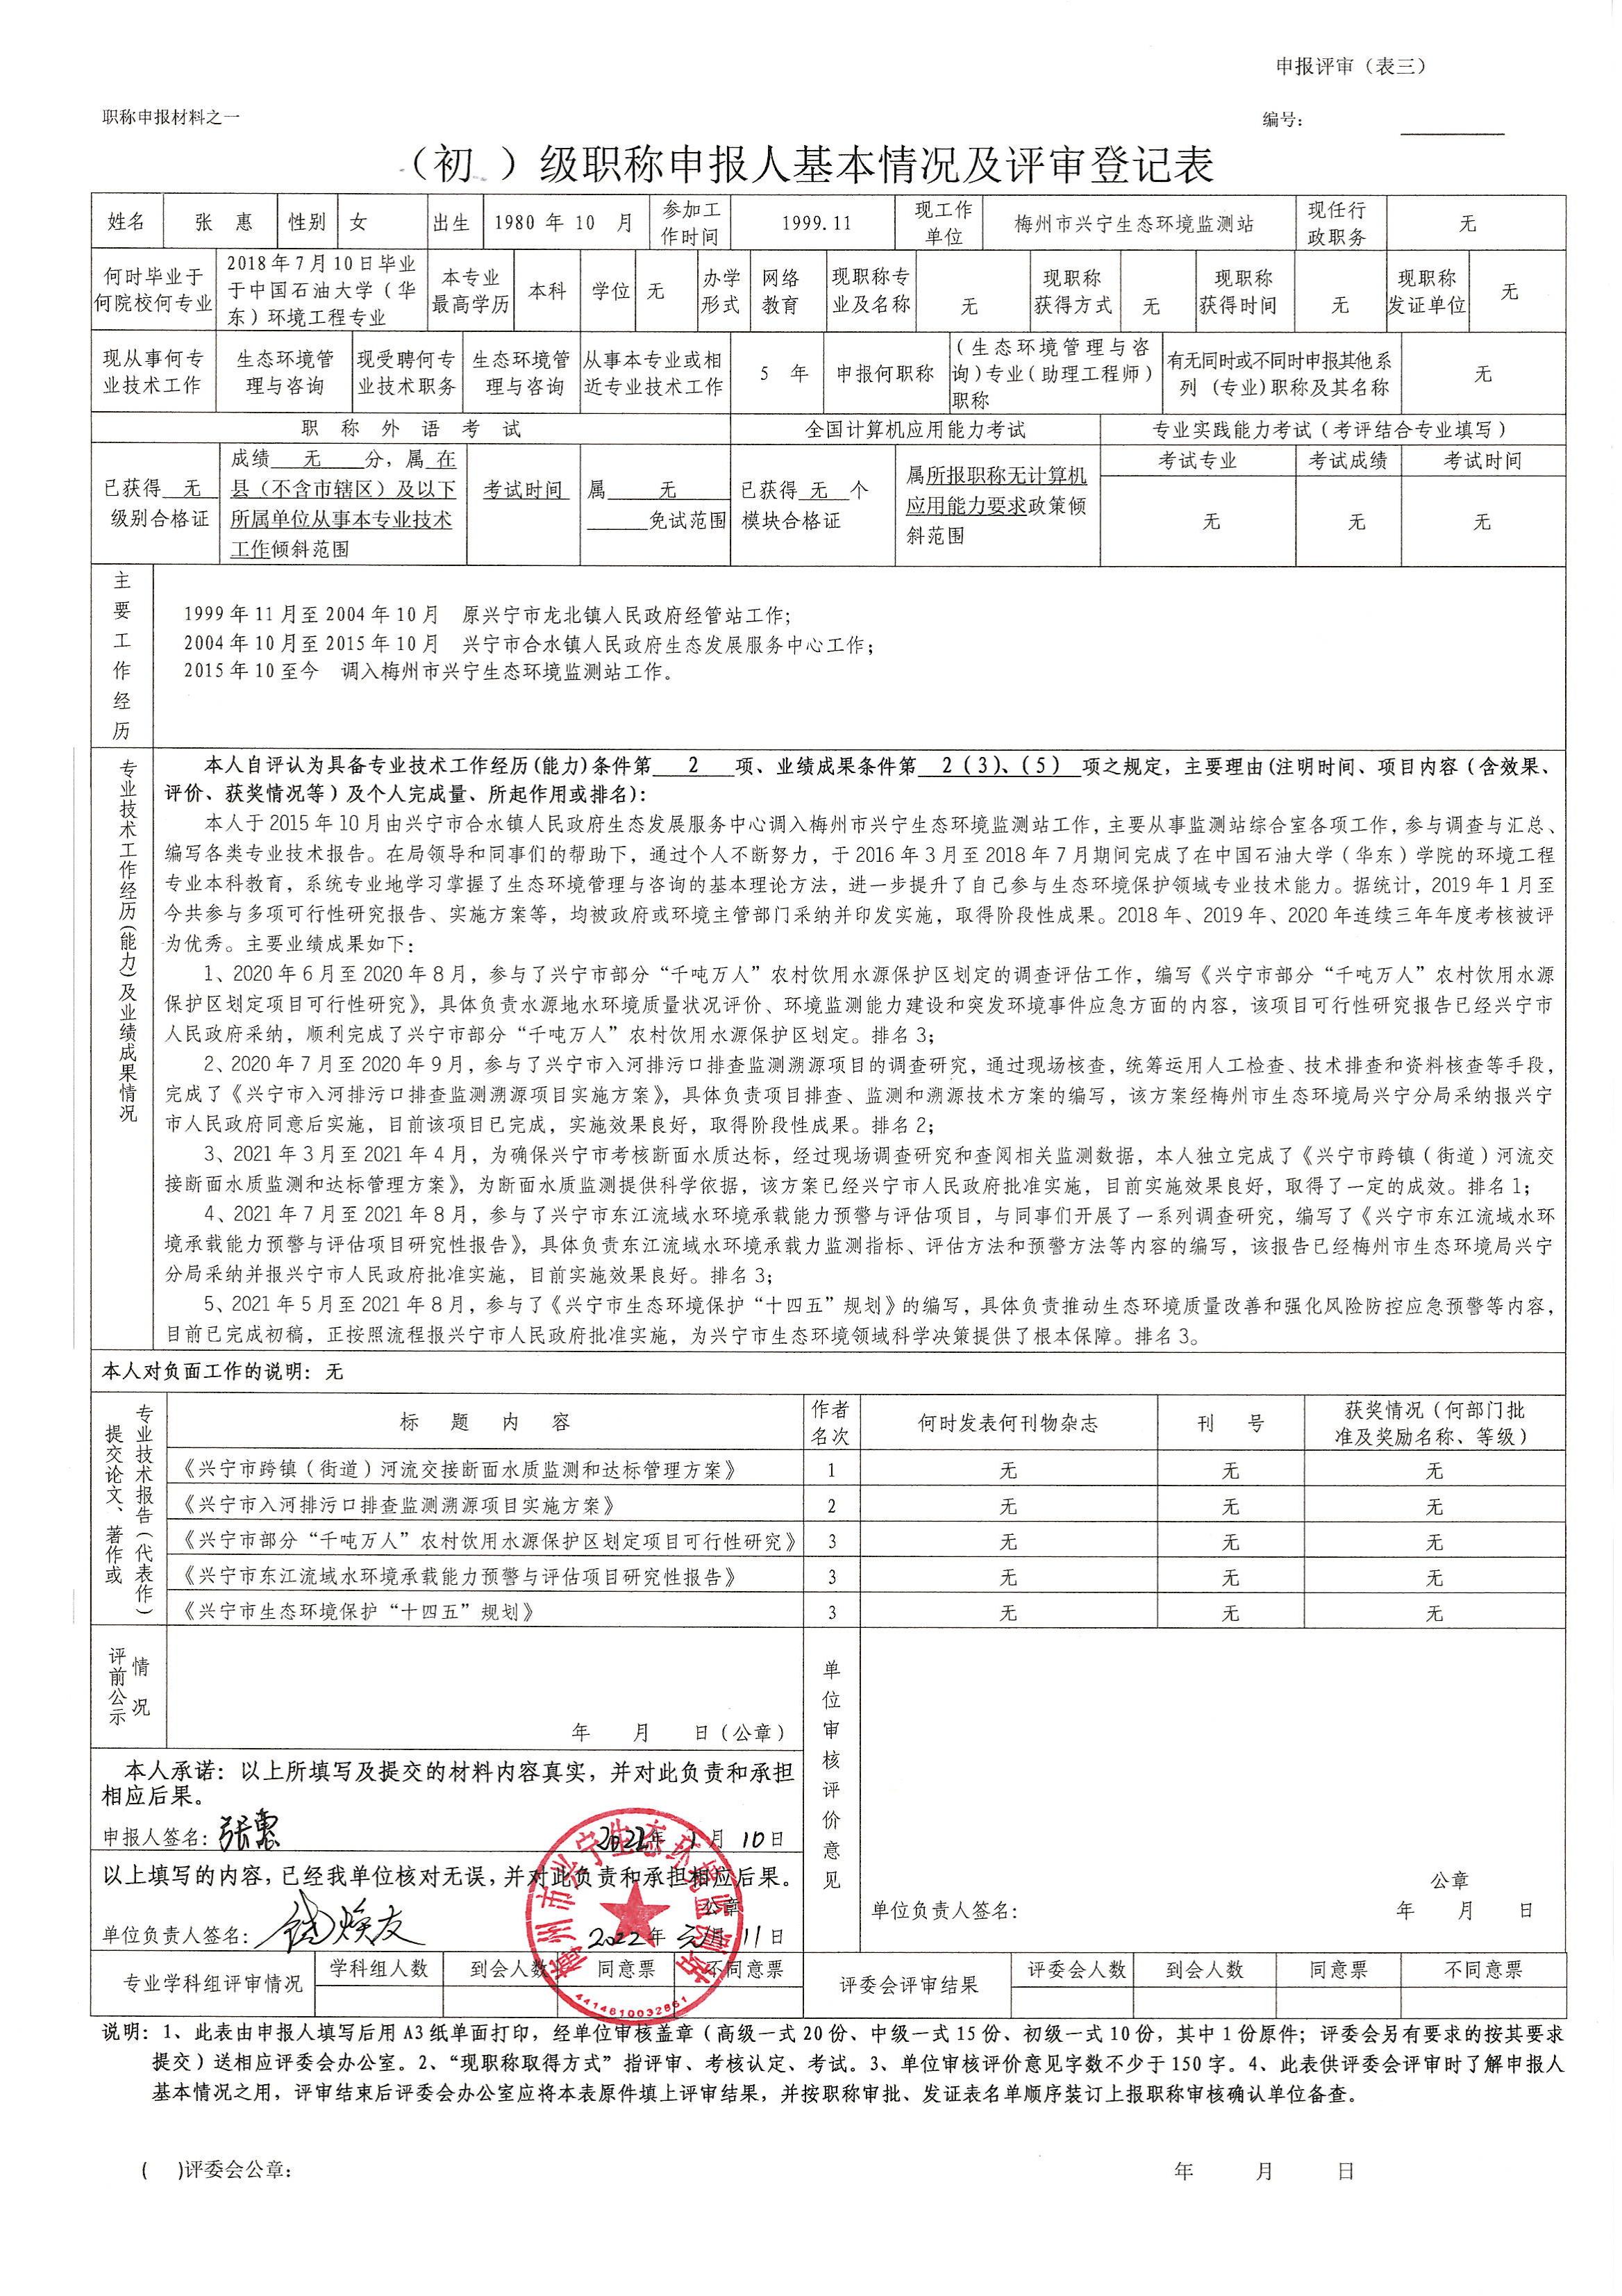 评审登记表（张惠）_00.jpg